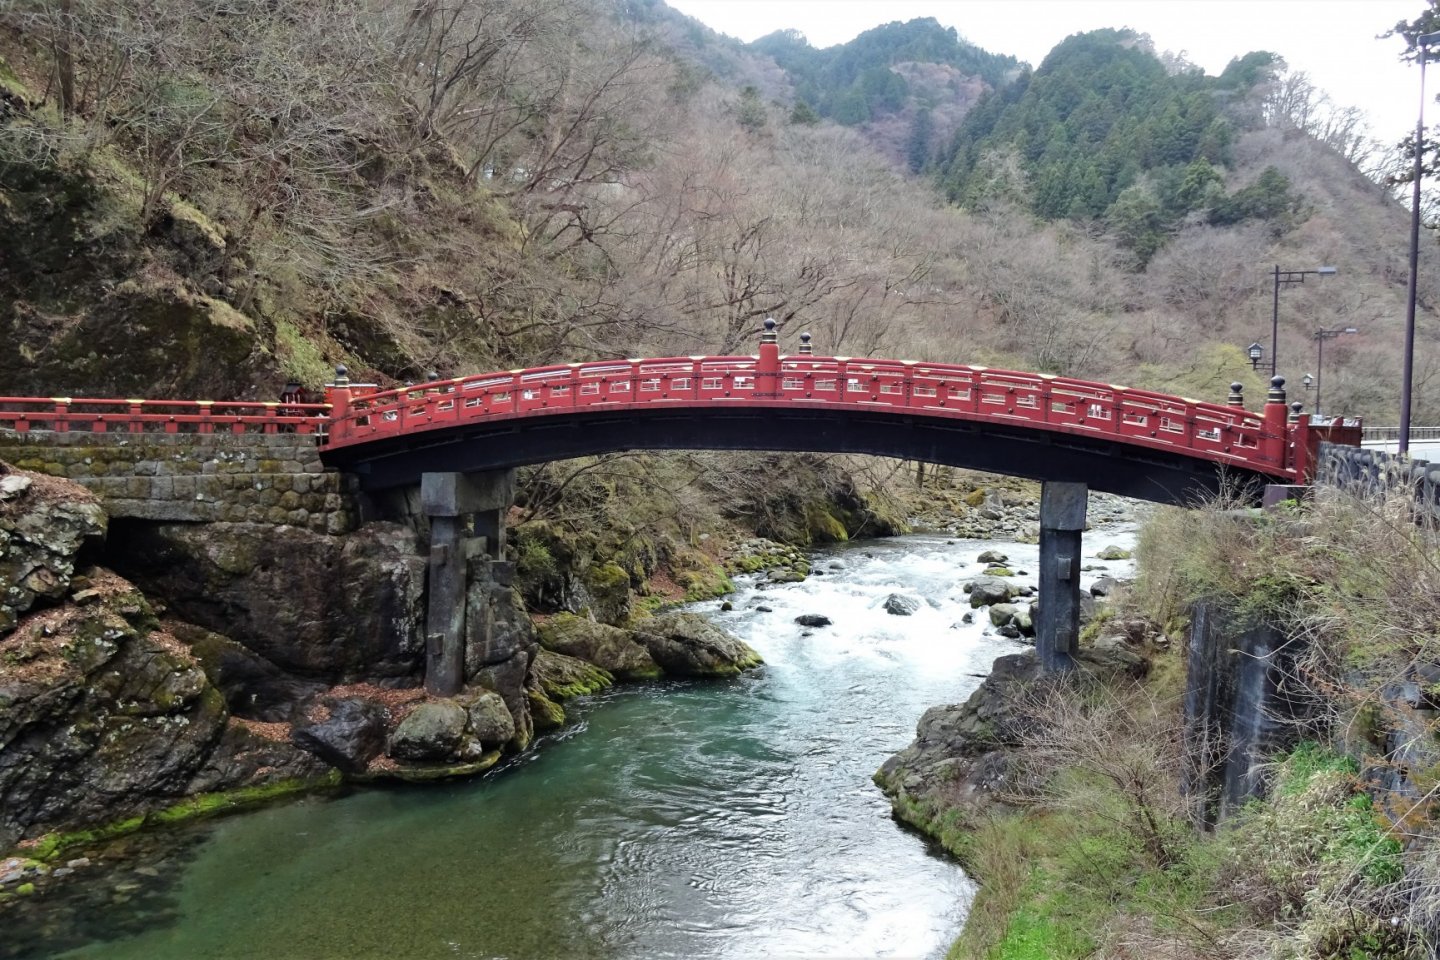 สะพานชินเกียว สะพานศักดิ์สิทธิ์ ที่สร้างขึ้นเพื่อทอดข้ามแม่น้ำไดยะ (Daiya) ไปสู่ศาลเจ้าฟุทะอะระซาน (Futaarasan)